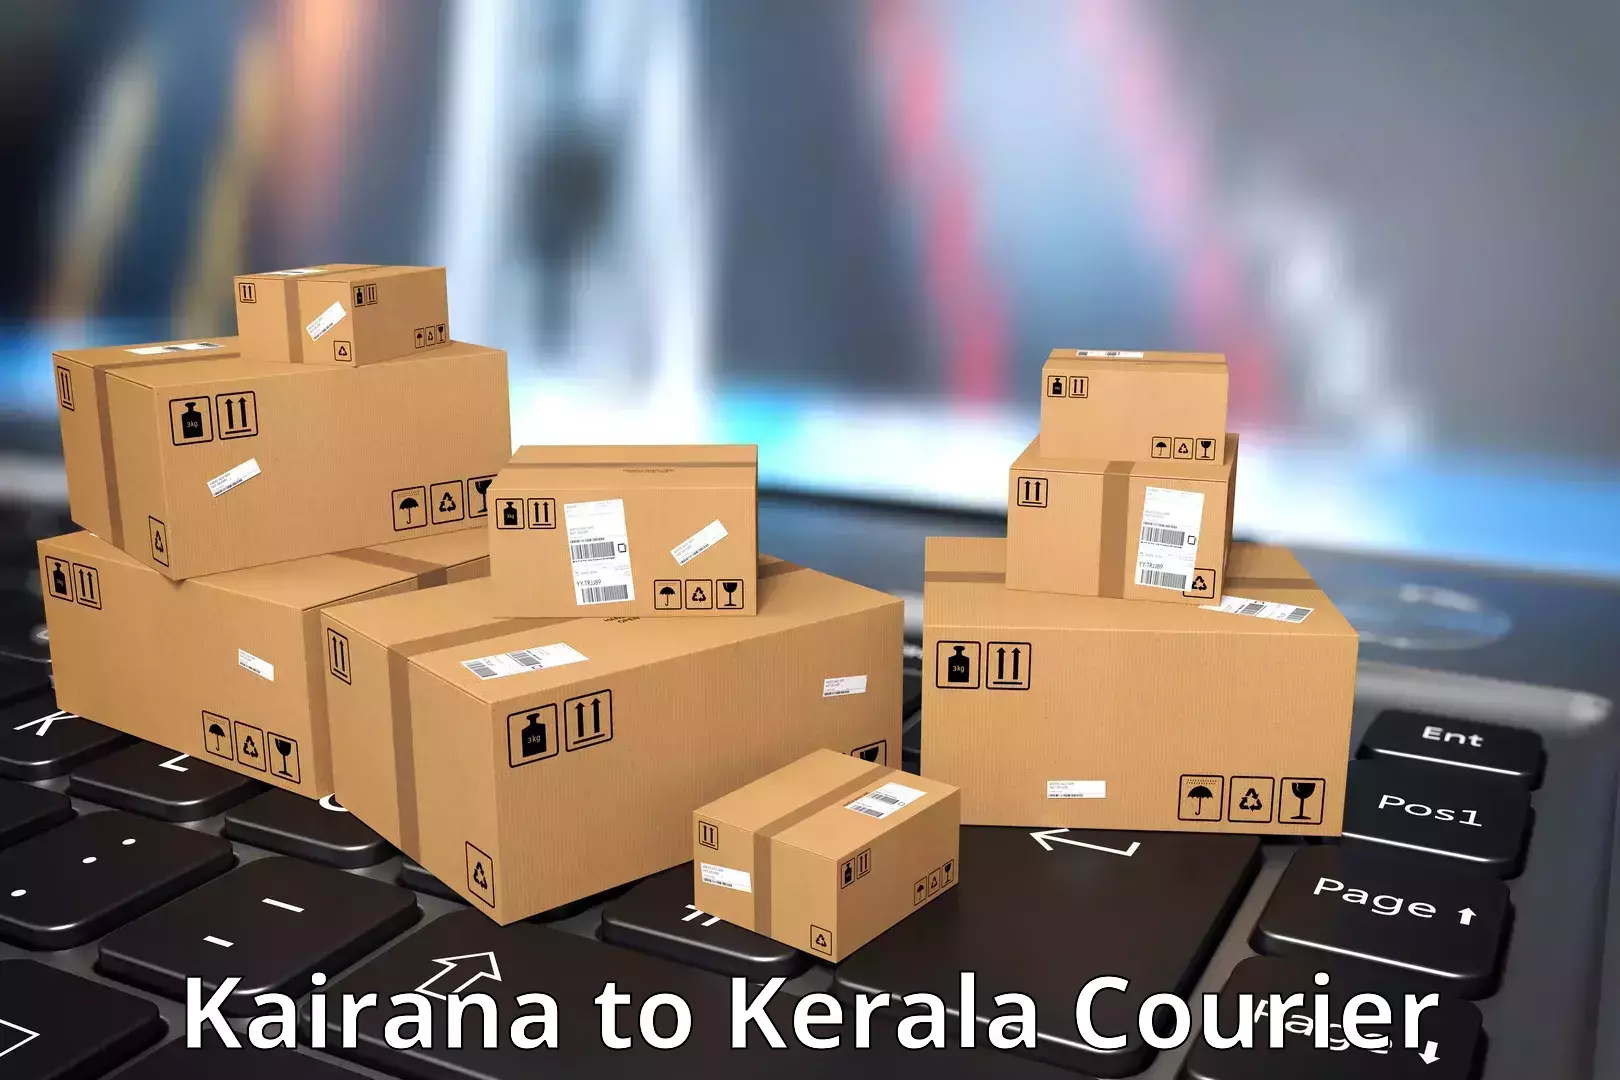 Sustainable shipping practices Kairana to Kottarakkara